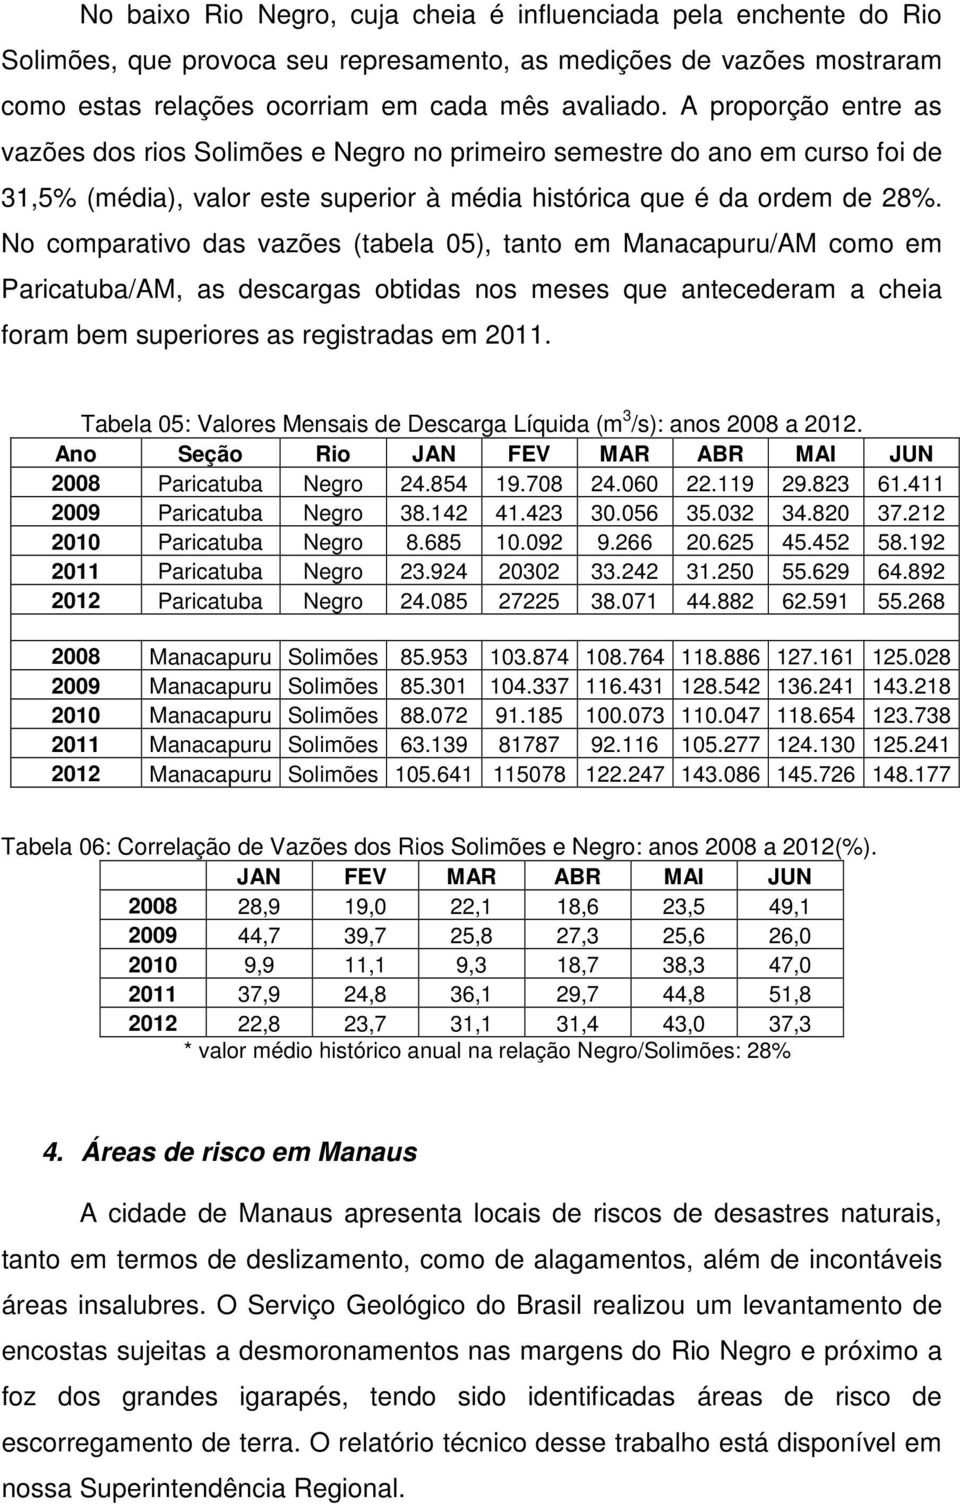 No comparativo das vazões (tabela 05), tanto em Manacapuru/AM como em Paricatuba/AM, as descargas obtidas nos meses que antecederam a cheia foram bem superiores as registradas em 2011.